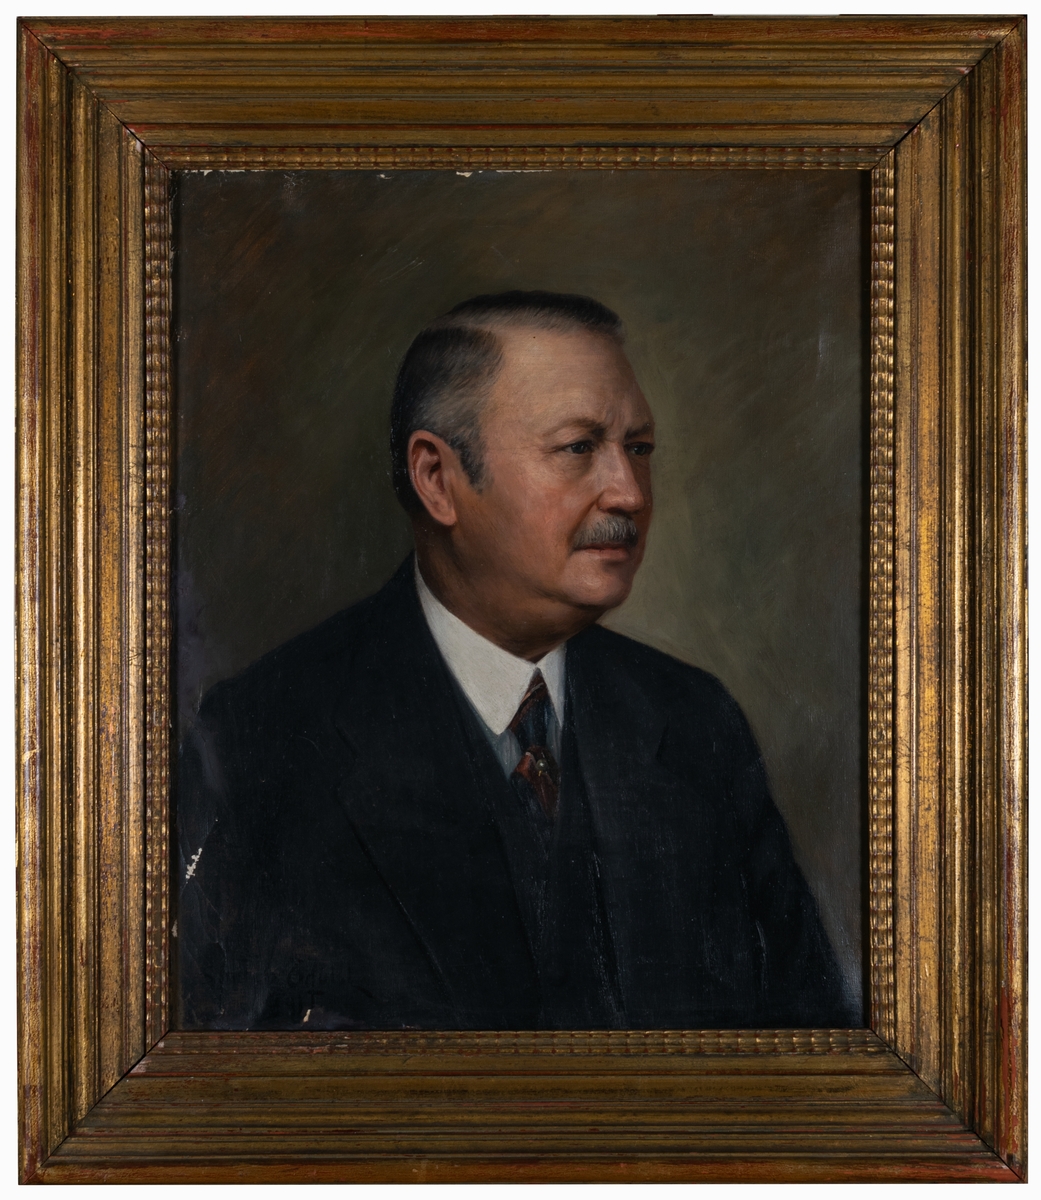 Porträtt från 1941 av konsul och företagare Wilhelm Ericson, grundare av Rabenius & Ericson 1901, senare ändrat namn till PIX med Ericson som ensam ägare. Vid Ahlgrens/Läkerols uppköp av PIX 1975 kom troligen porträttet till Ahlgrens huvudkontor i Gävle.